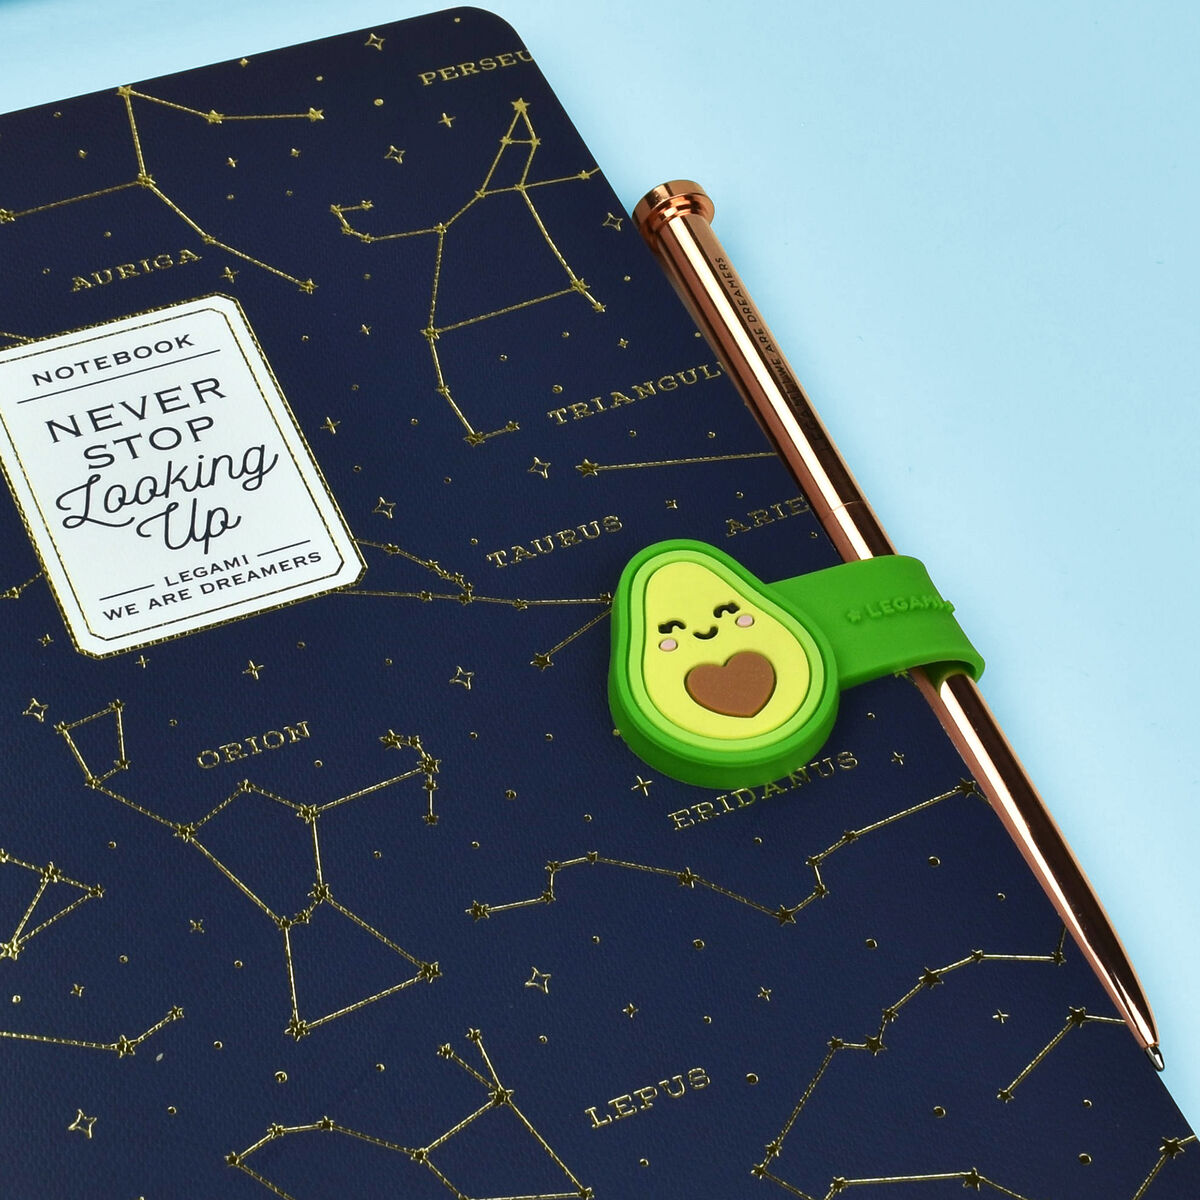 LEGAMI magnetischer Clip Avocado 1 | Gift ideas for avocado lovers